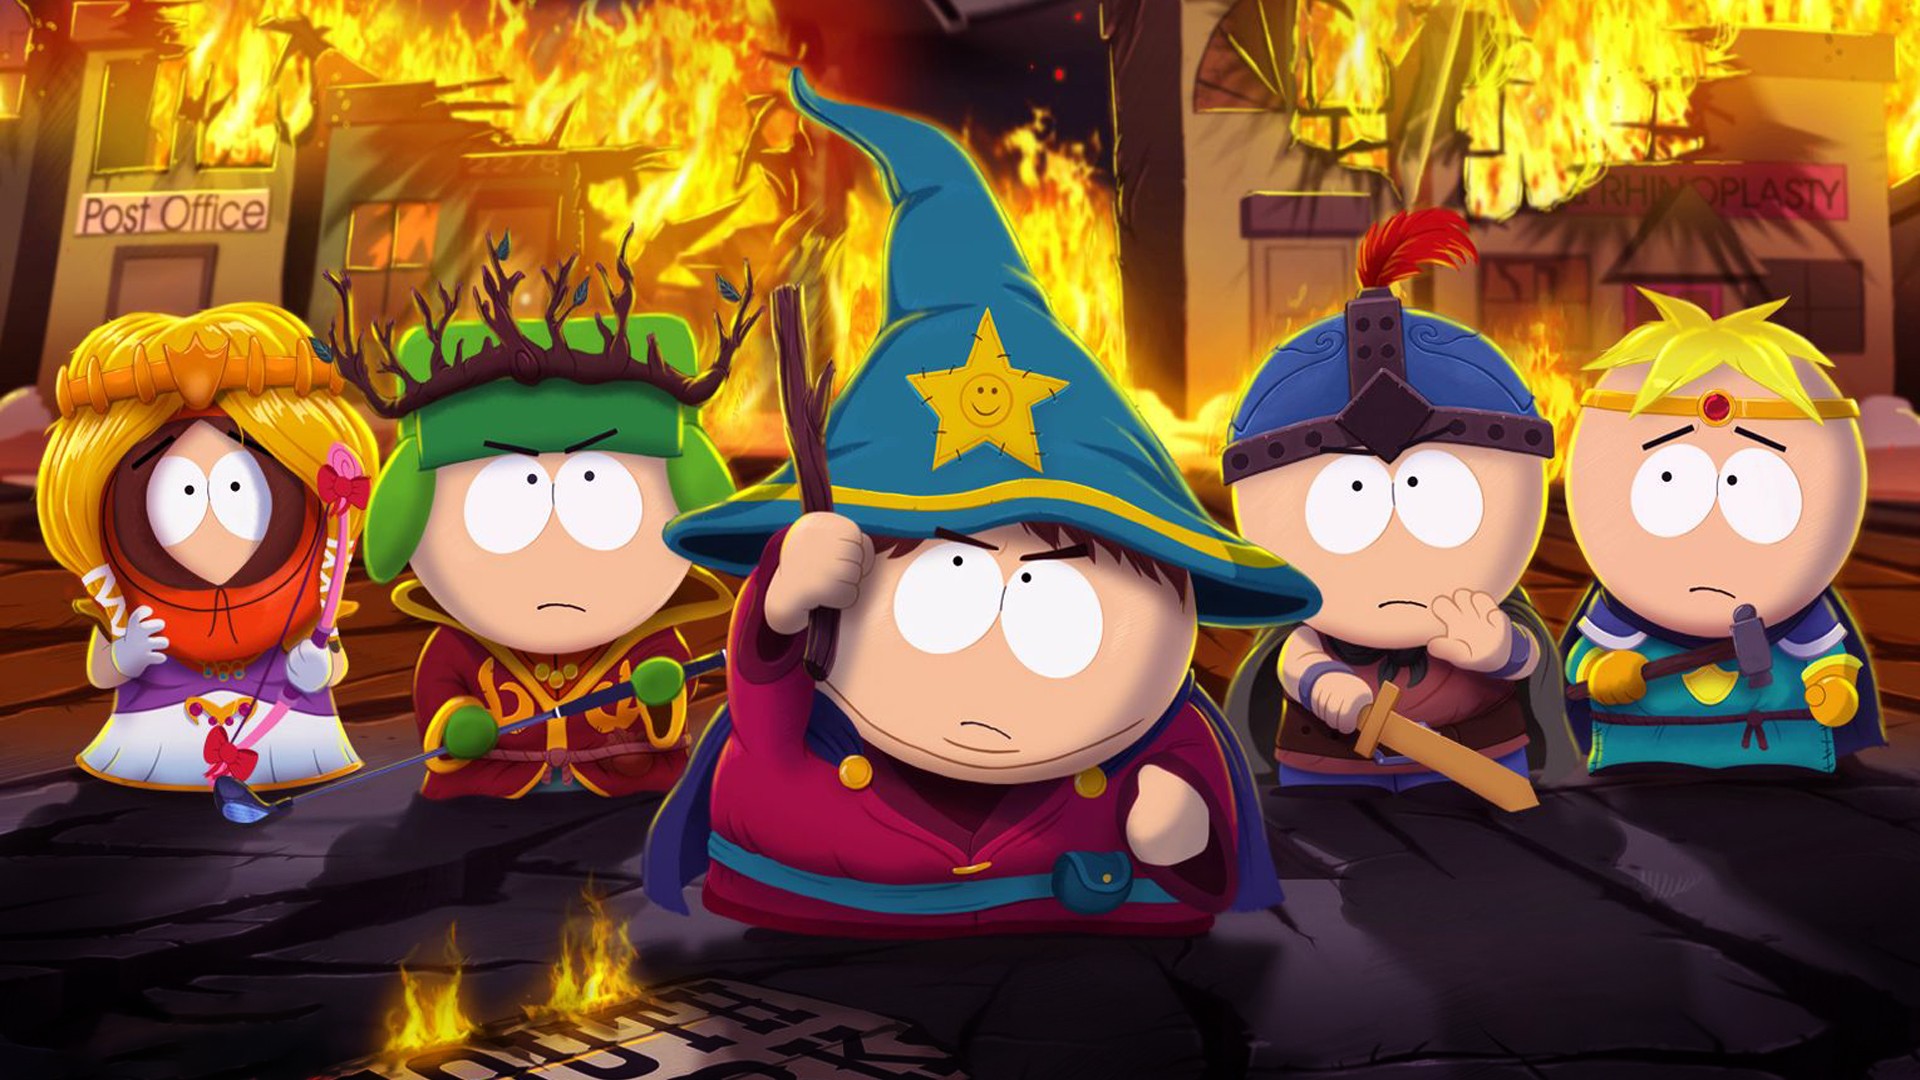 hoste falanks Definition South Park: The Stick of Truth review | GamesRadar+